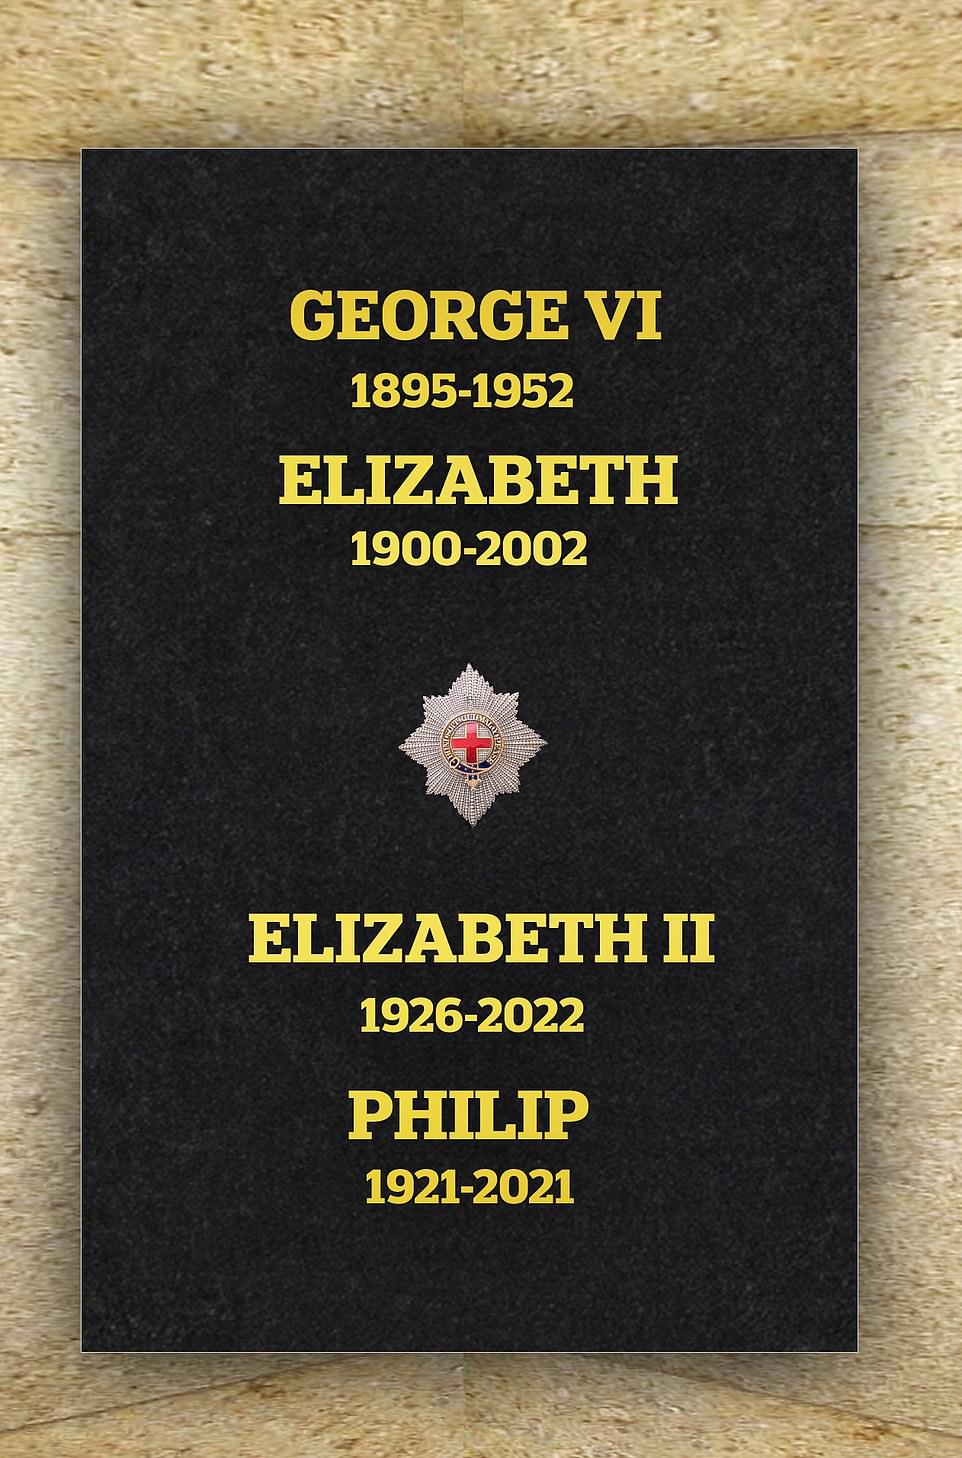 Uma laje de pedra com os nomes da rainha Elizabeth II, seu falecido marido, o príncipe Philip, e seus pais, o rei George VI e a rainha Elizabeth, foi instalada na Capela de São Jorge em Windsor